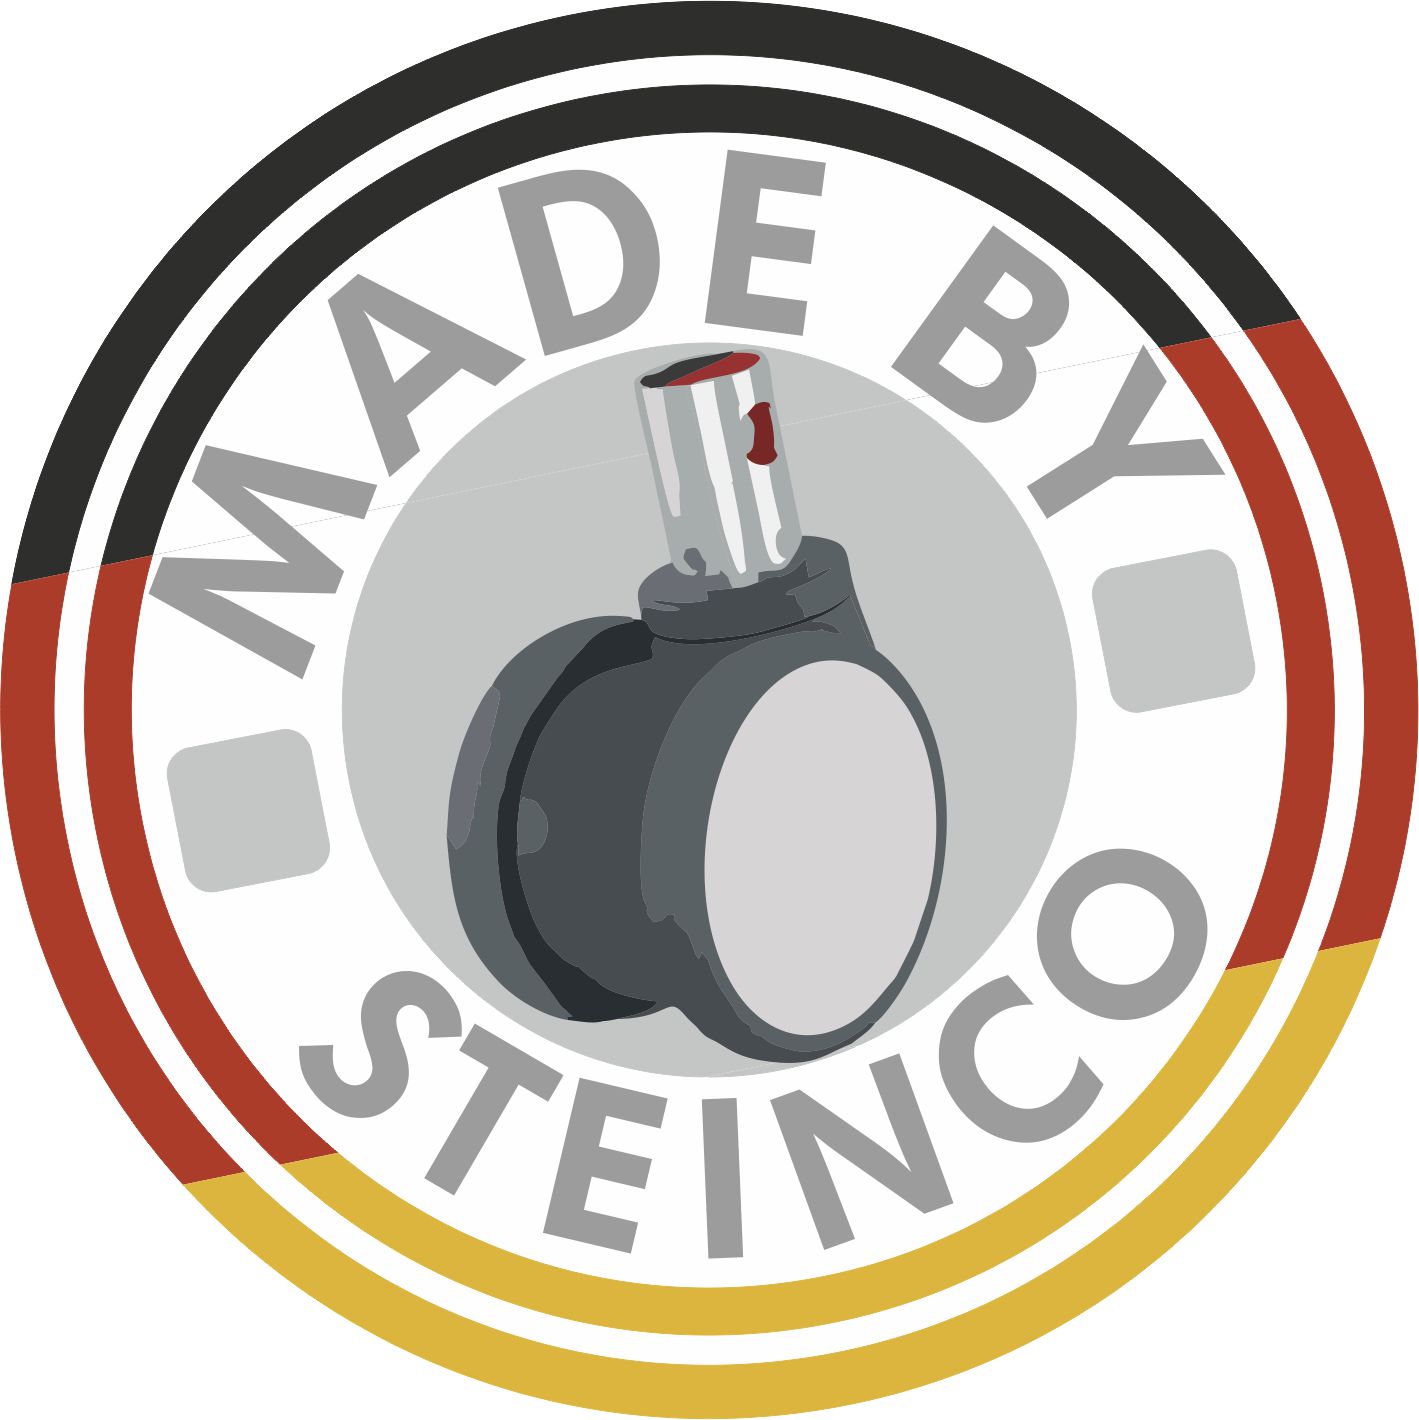 [Translate to Dänisch:] Hersteller Rollen und Räder - Made by STEINCO and Made in Germany